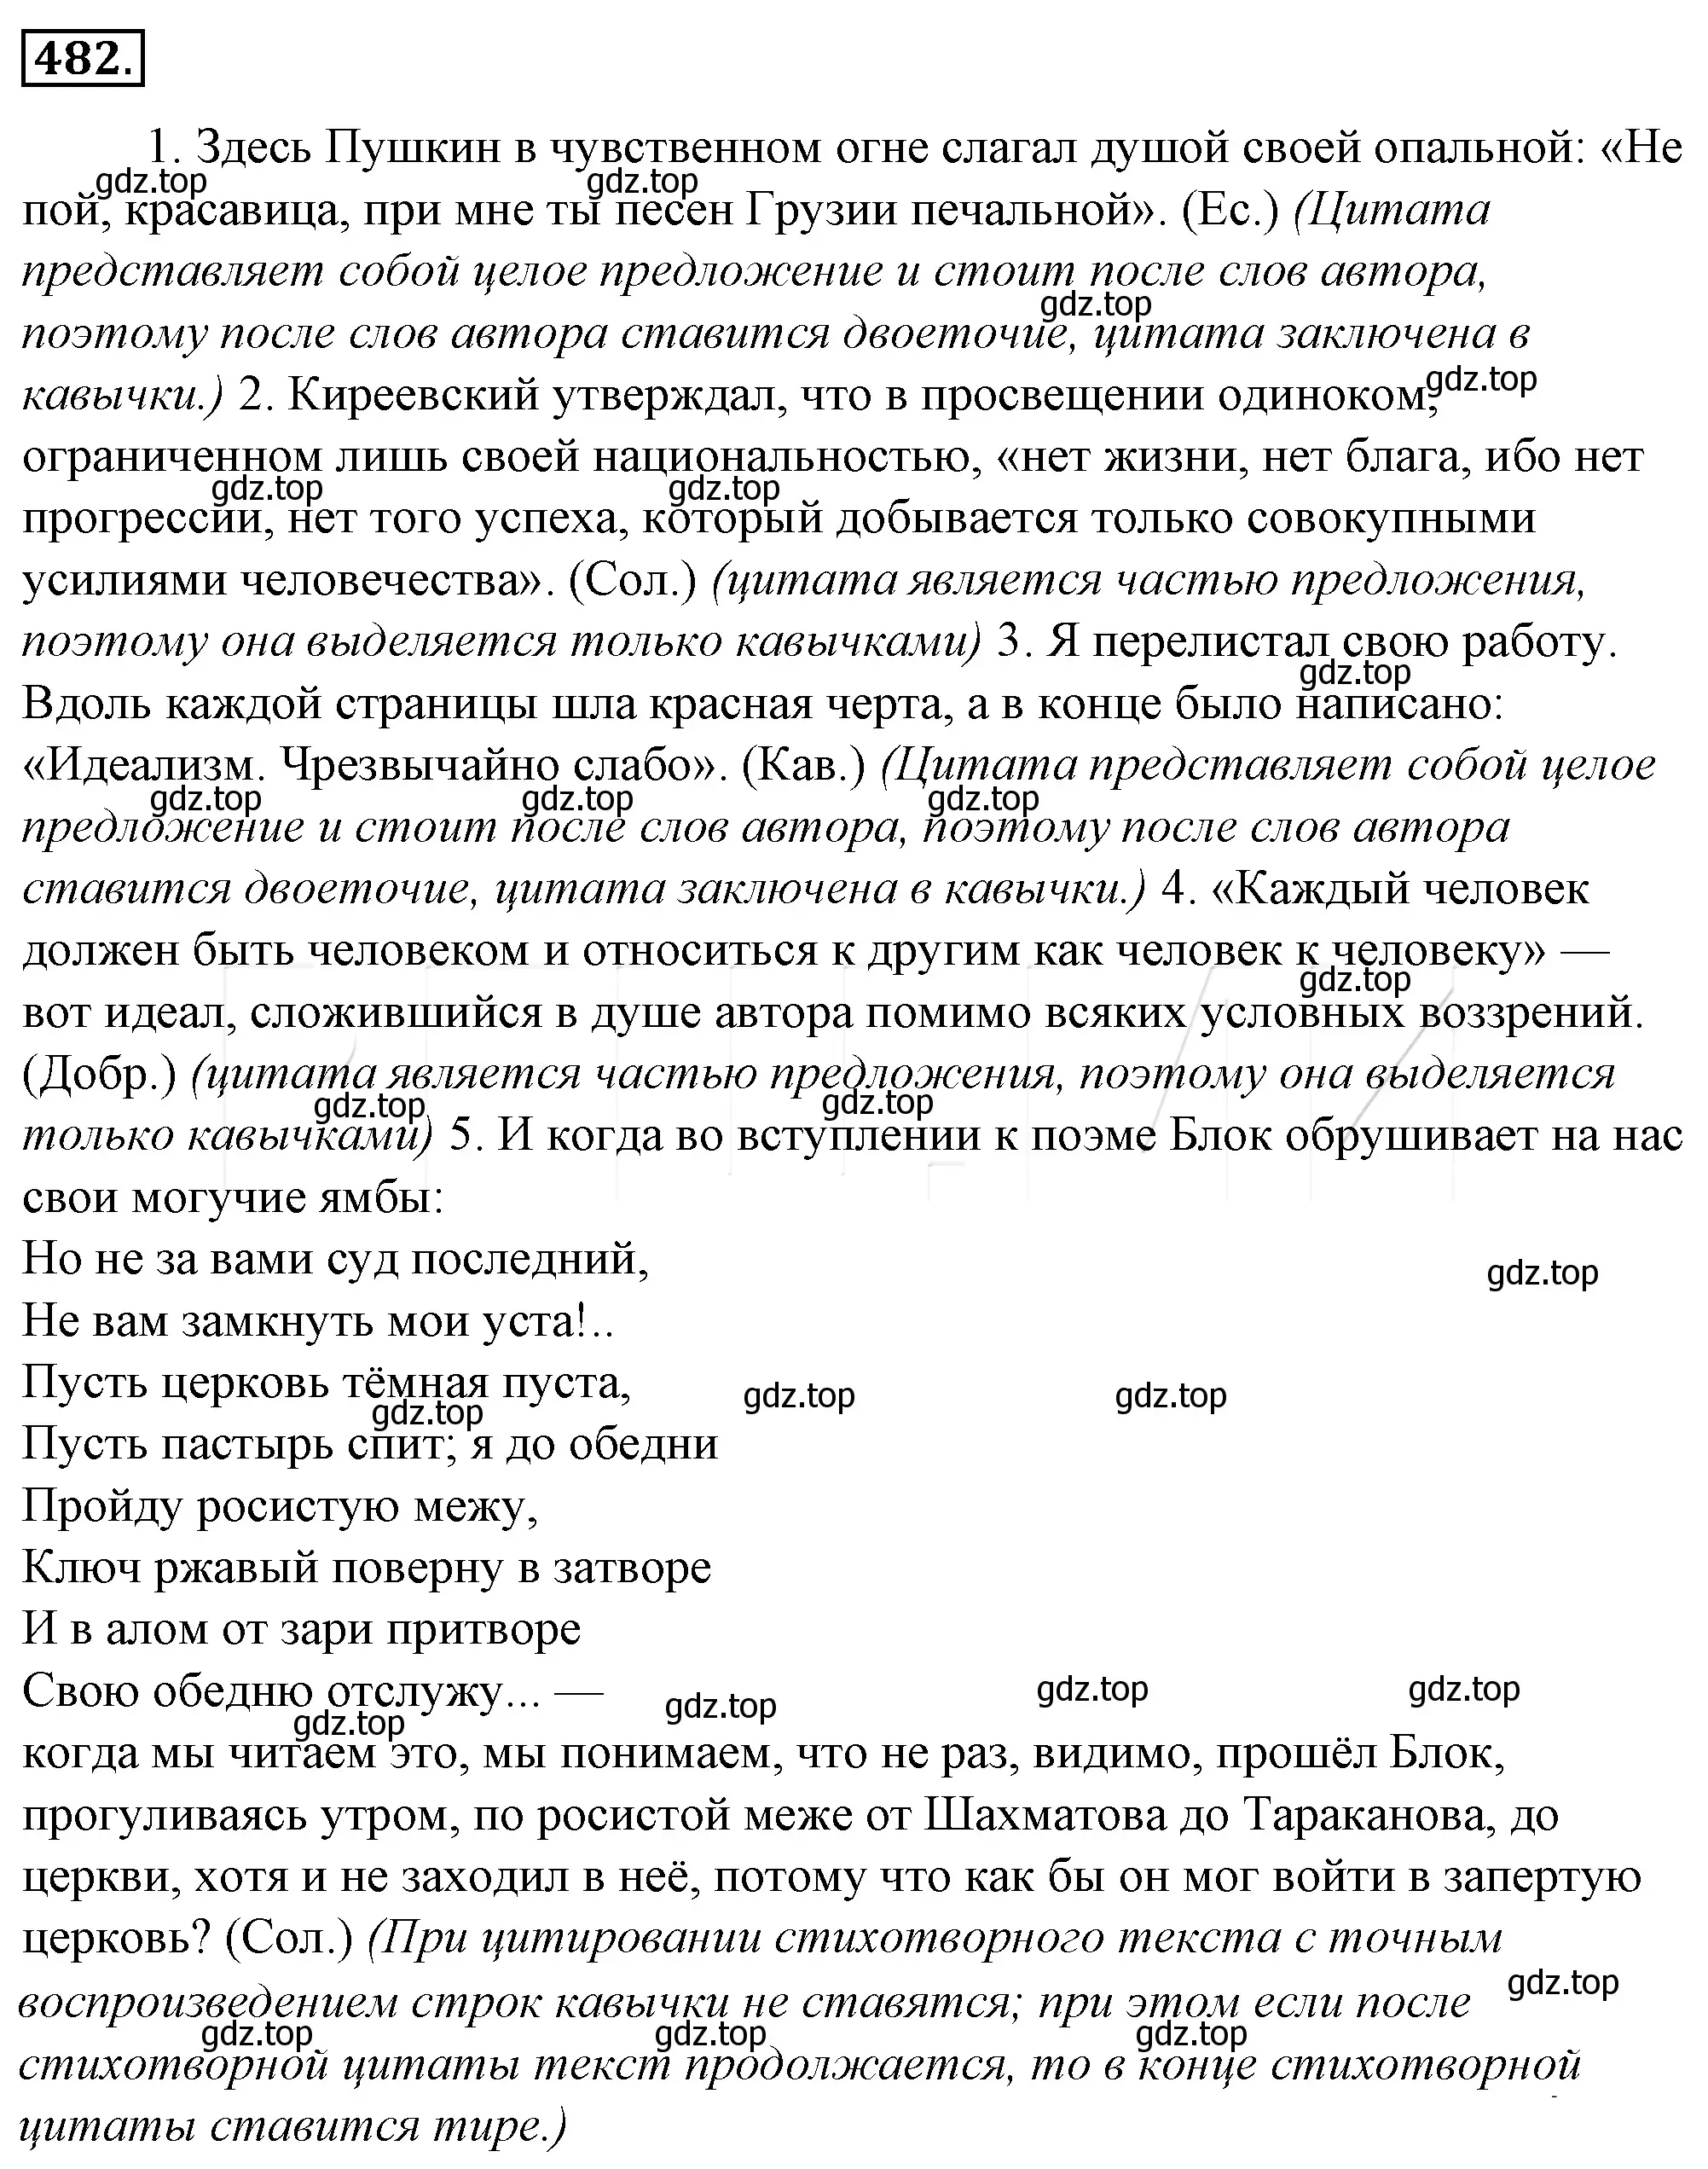 Решение 4. номер 147 (страница 208) гдз по русскому языку 10-11 класс Гольцова, Шамшин, учебник 2 часть